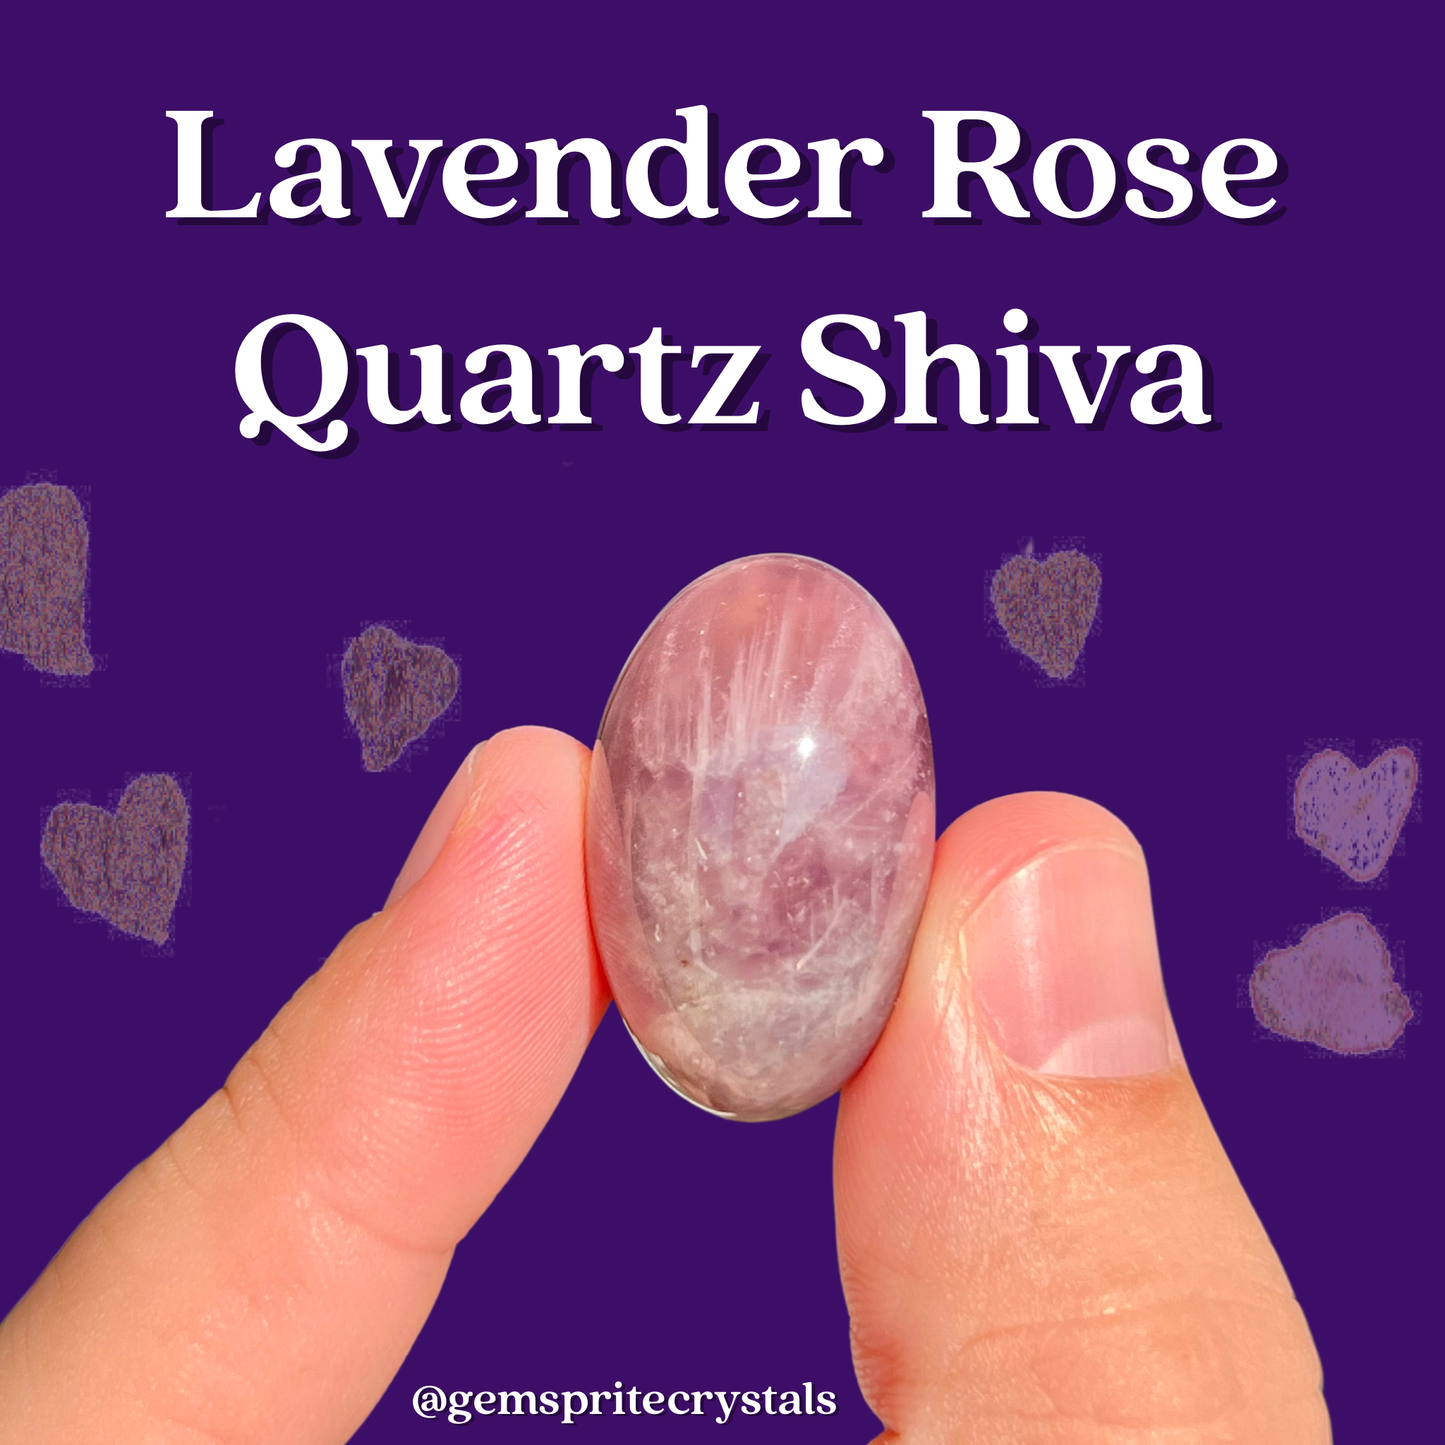 Lavender Rose Quartz Shiva